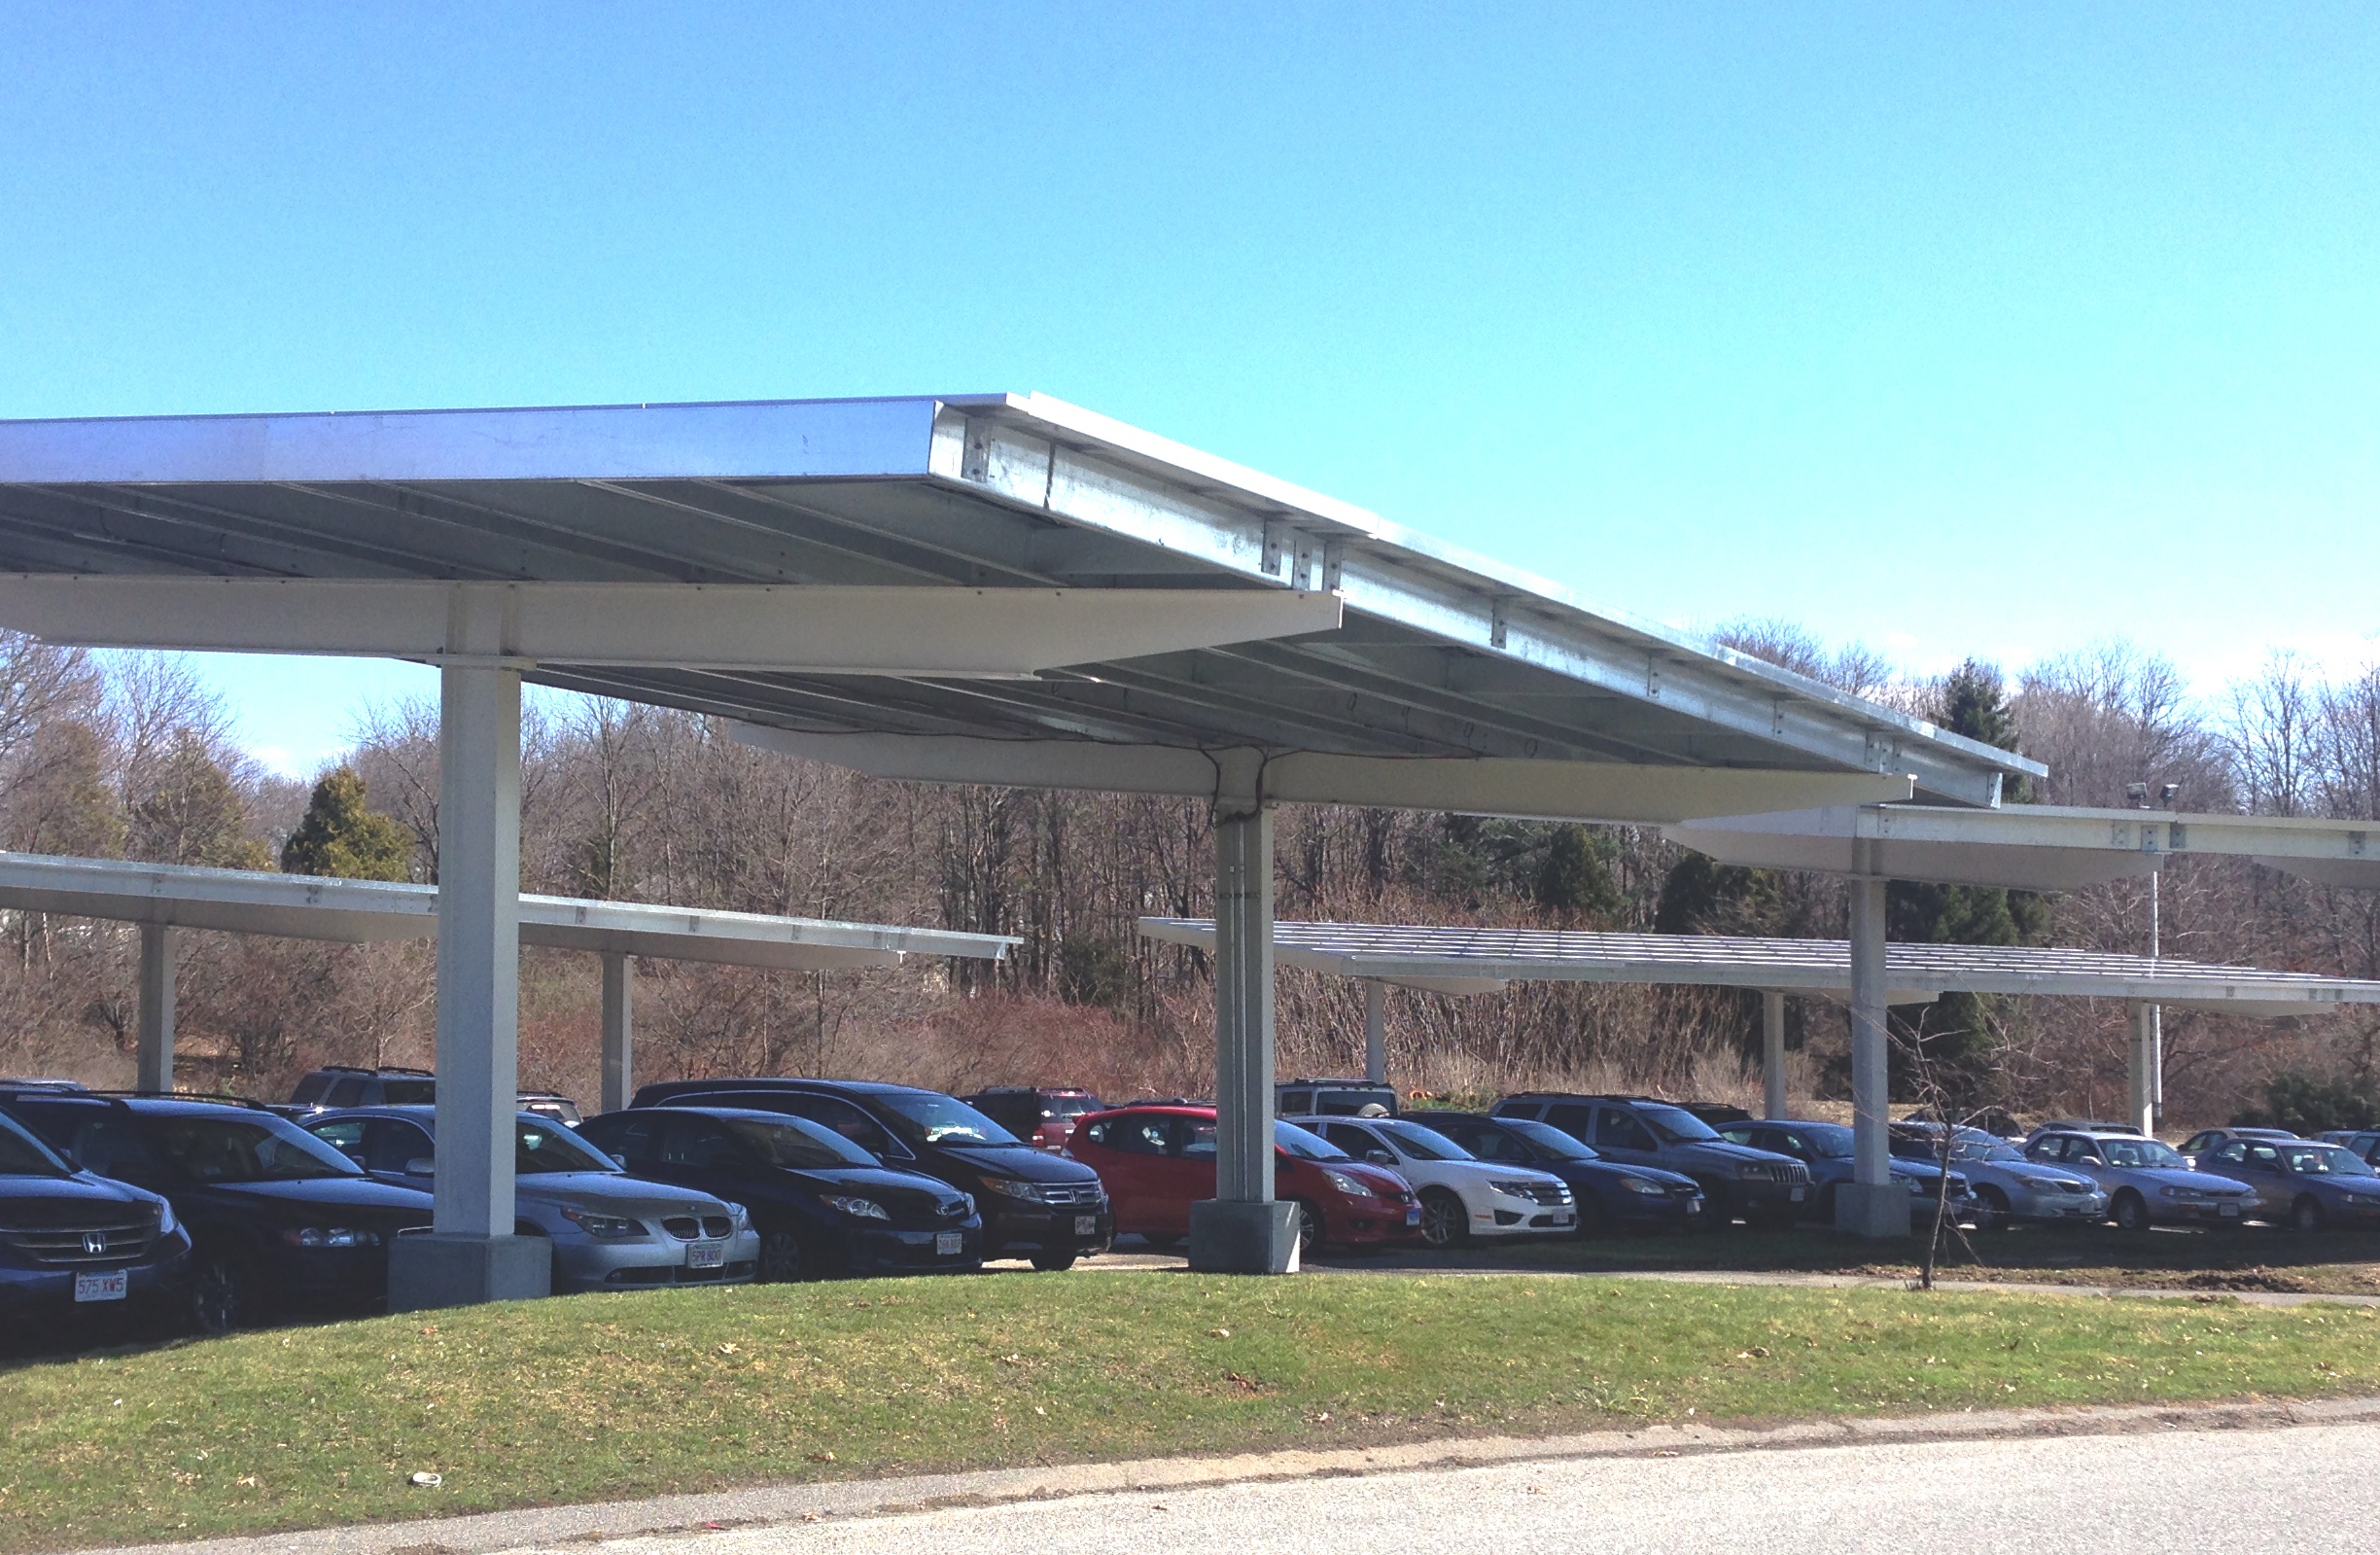 Burncoat High School's solar carport